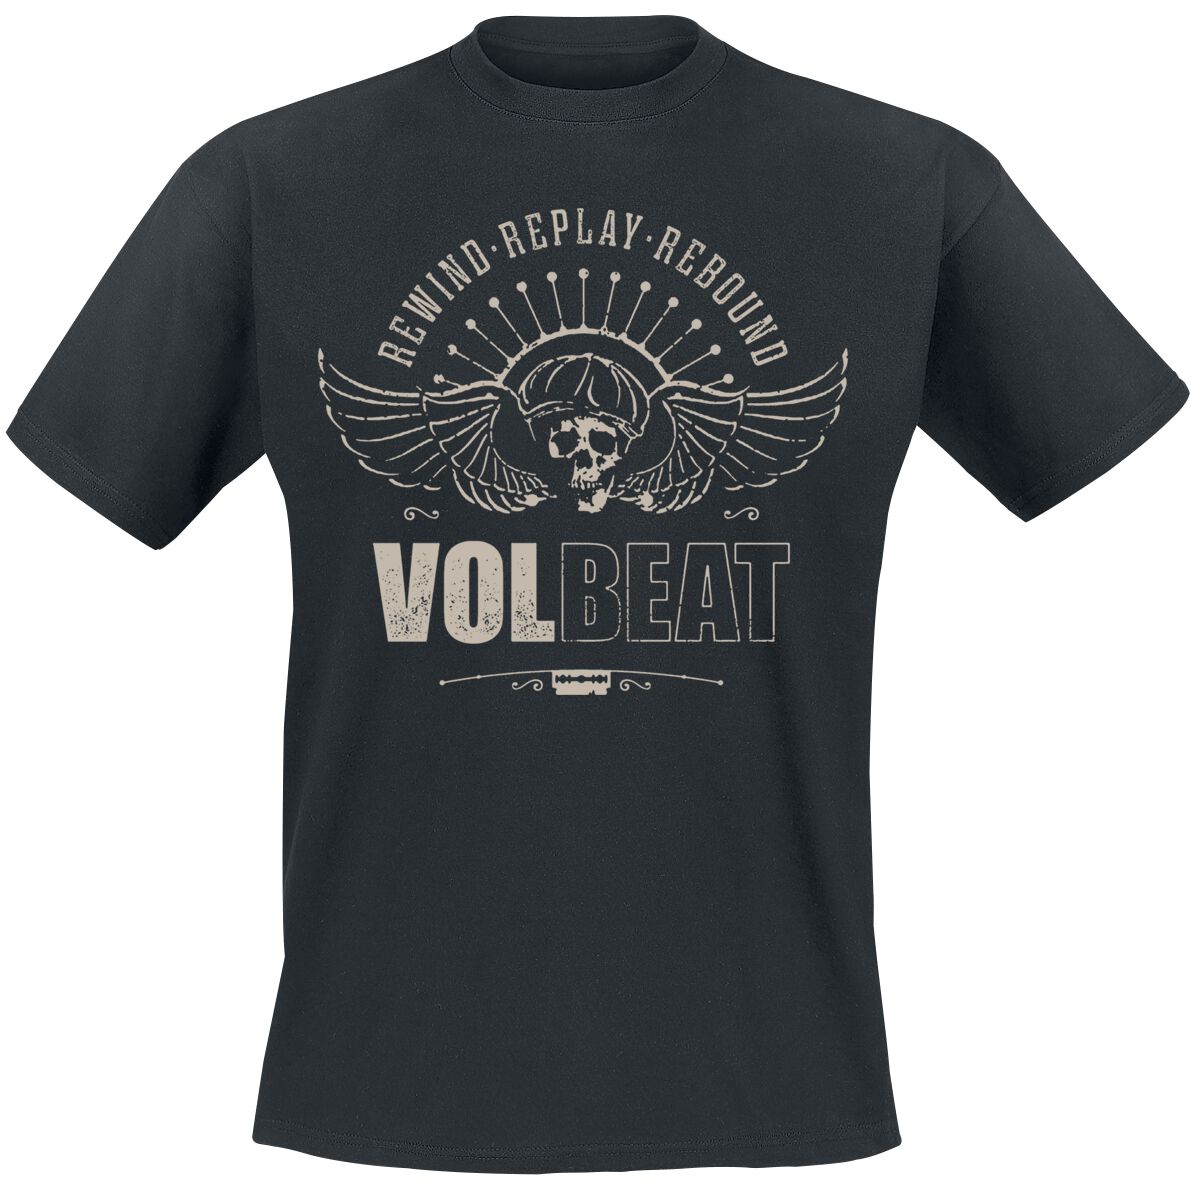 Volbeat T-Shirt - Skullwing - Rewind, Replay, Rebound - S bis 4XL - für Männer - Größe S - schwarz  - EMP exklusives Merchandise!